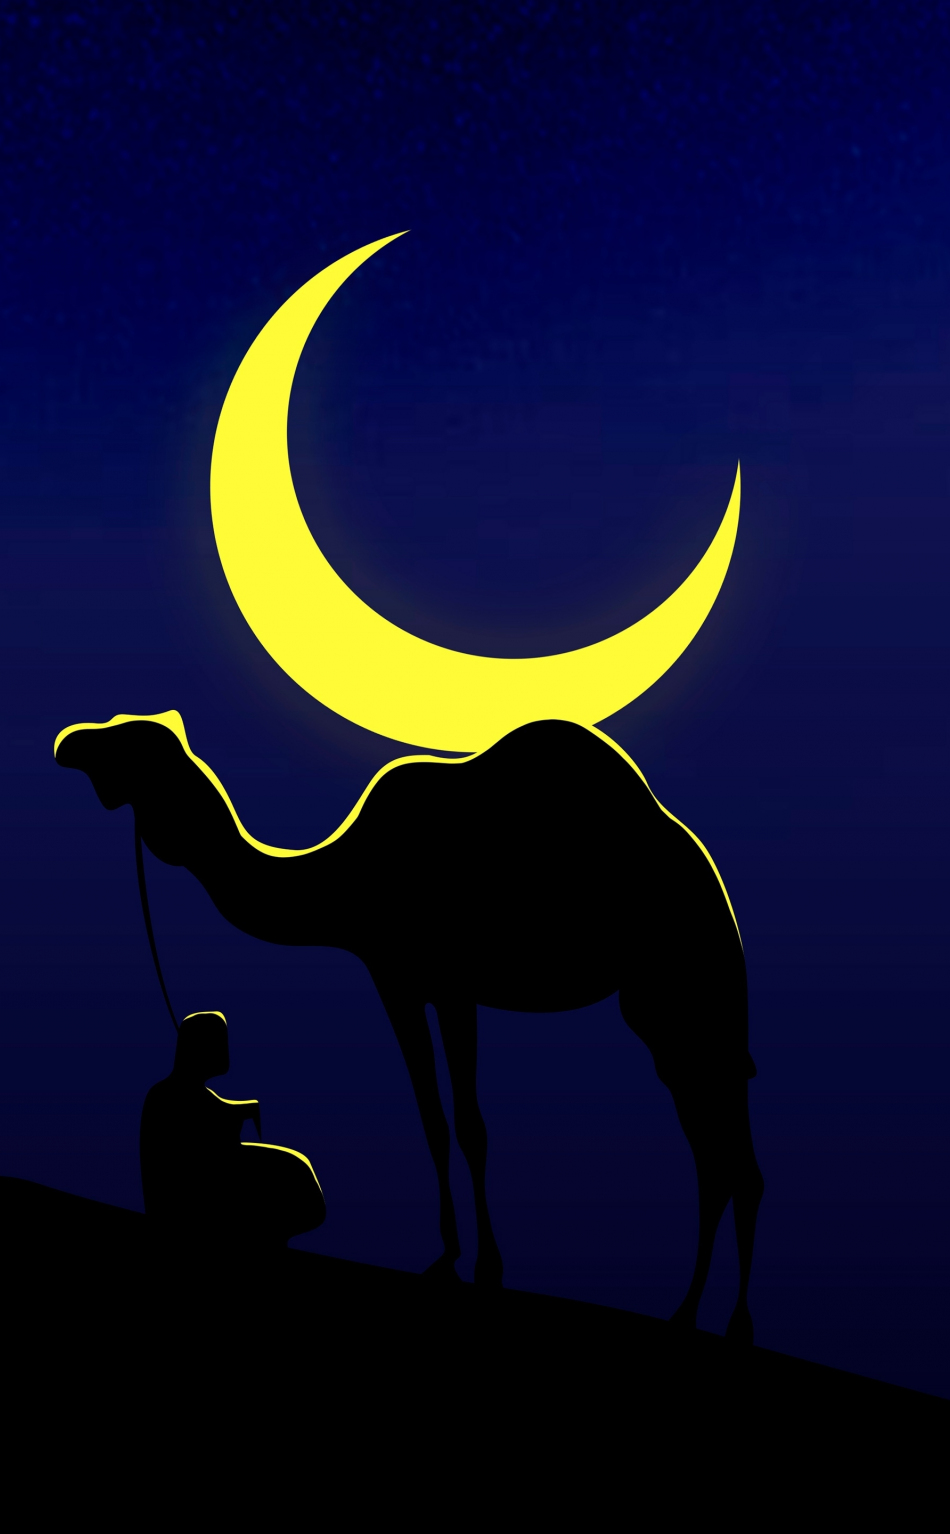 Camel and his master, moon, minimal, 950x1534 wallpaper